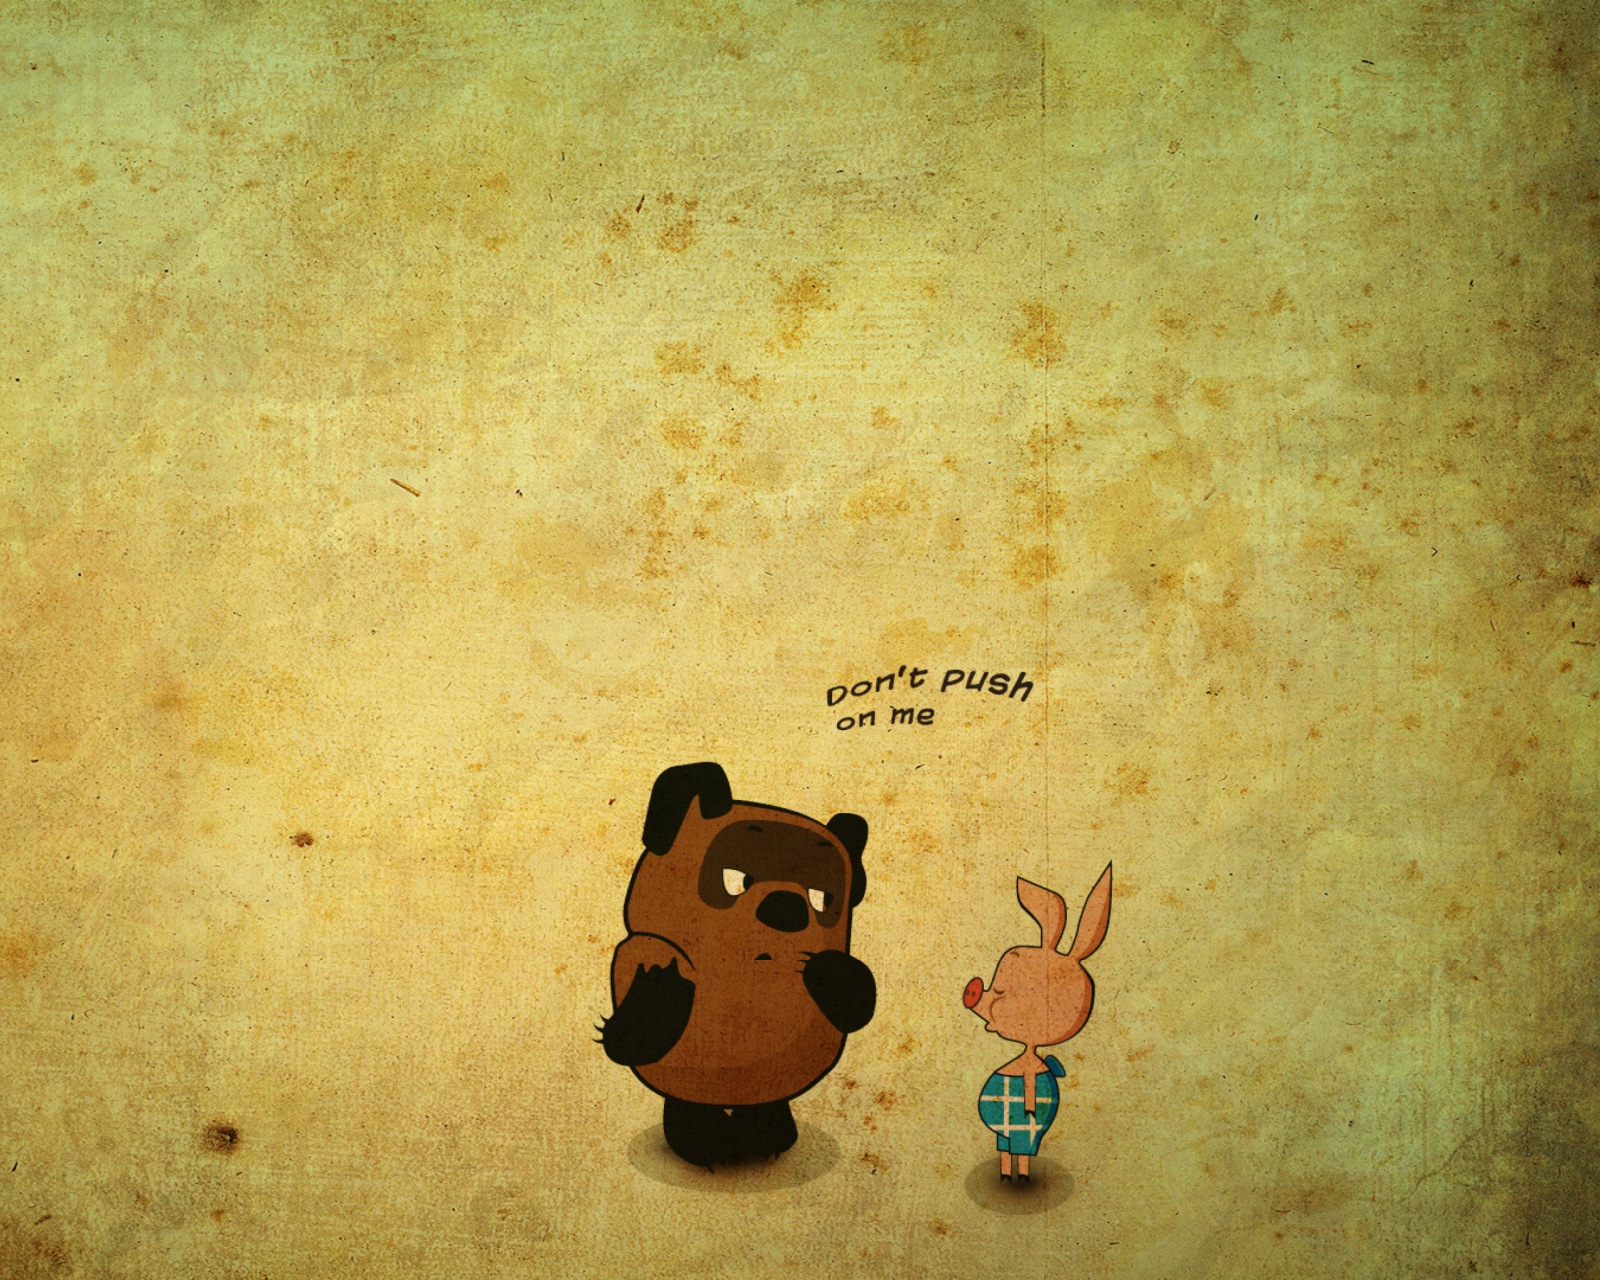 Russian Winnie The Pooh screenshot #1 1600x1280